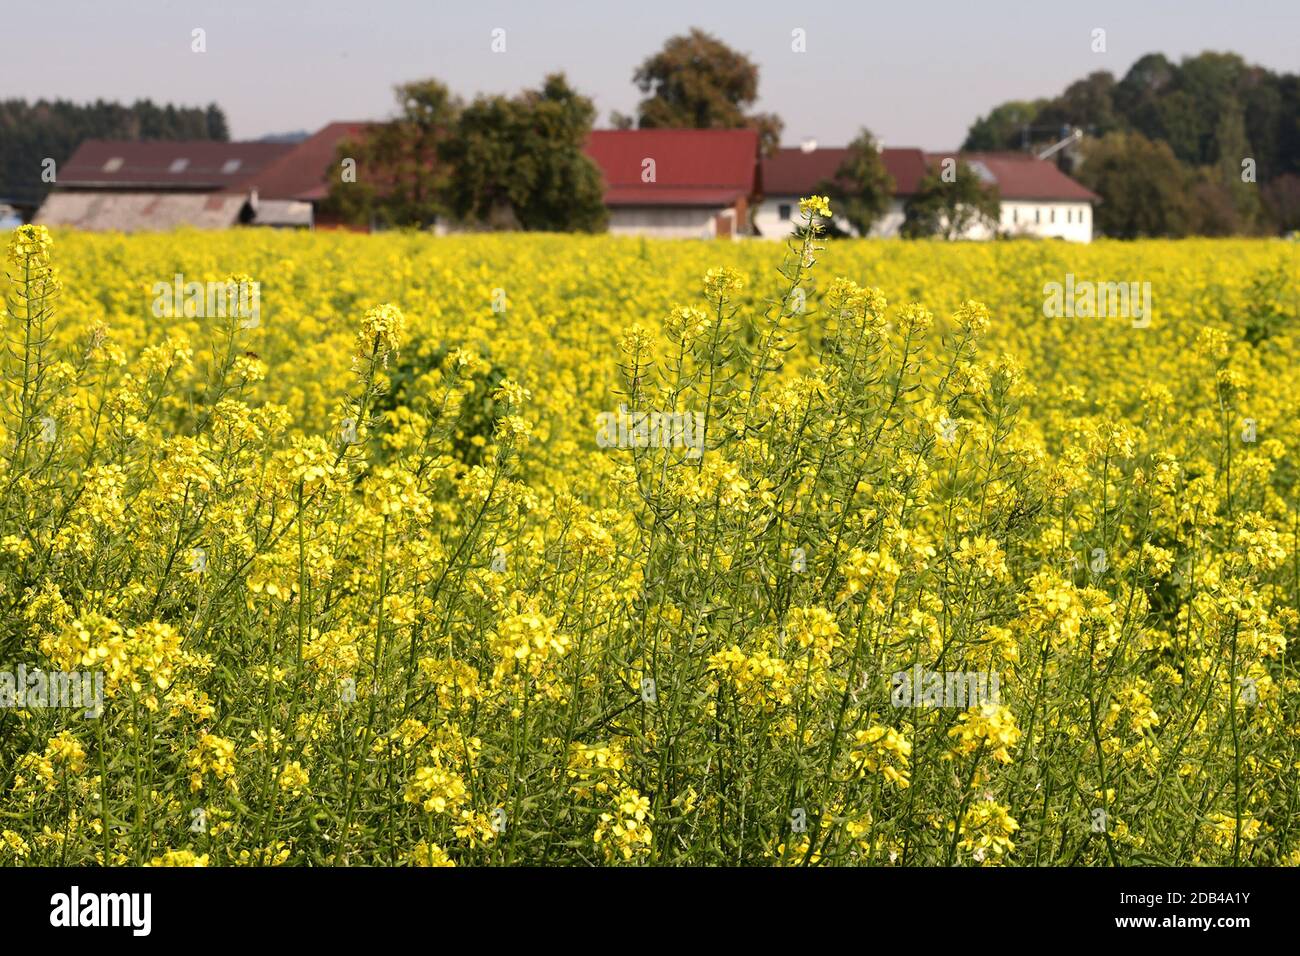 Ein Feld mit blühenden Senfpflanzen im Herbst im Salzkammergut - Senf ist ein scharfes Gewürz, das aus den Samenkörnern des Weißen, Braunen und des Sc Stock Photo